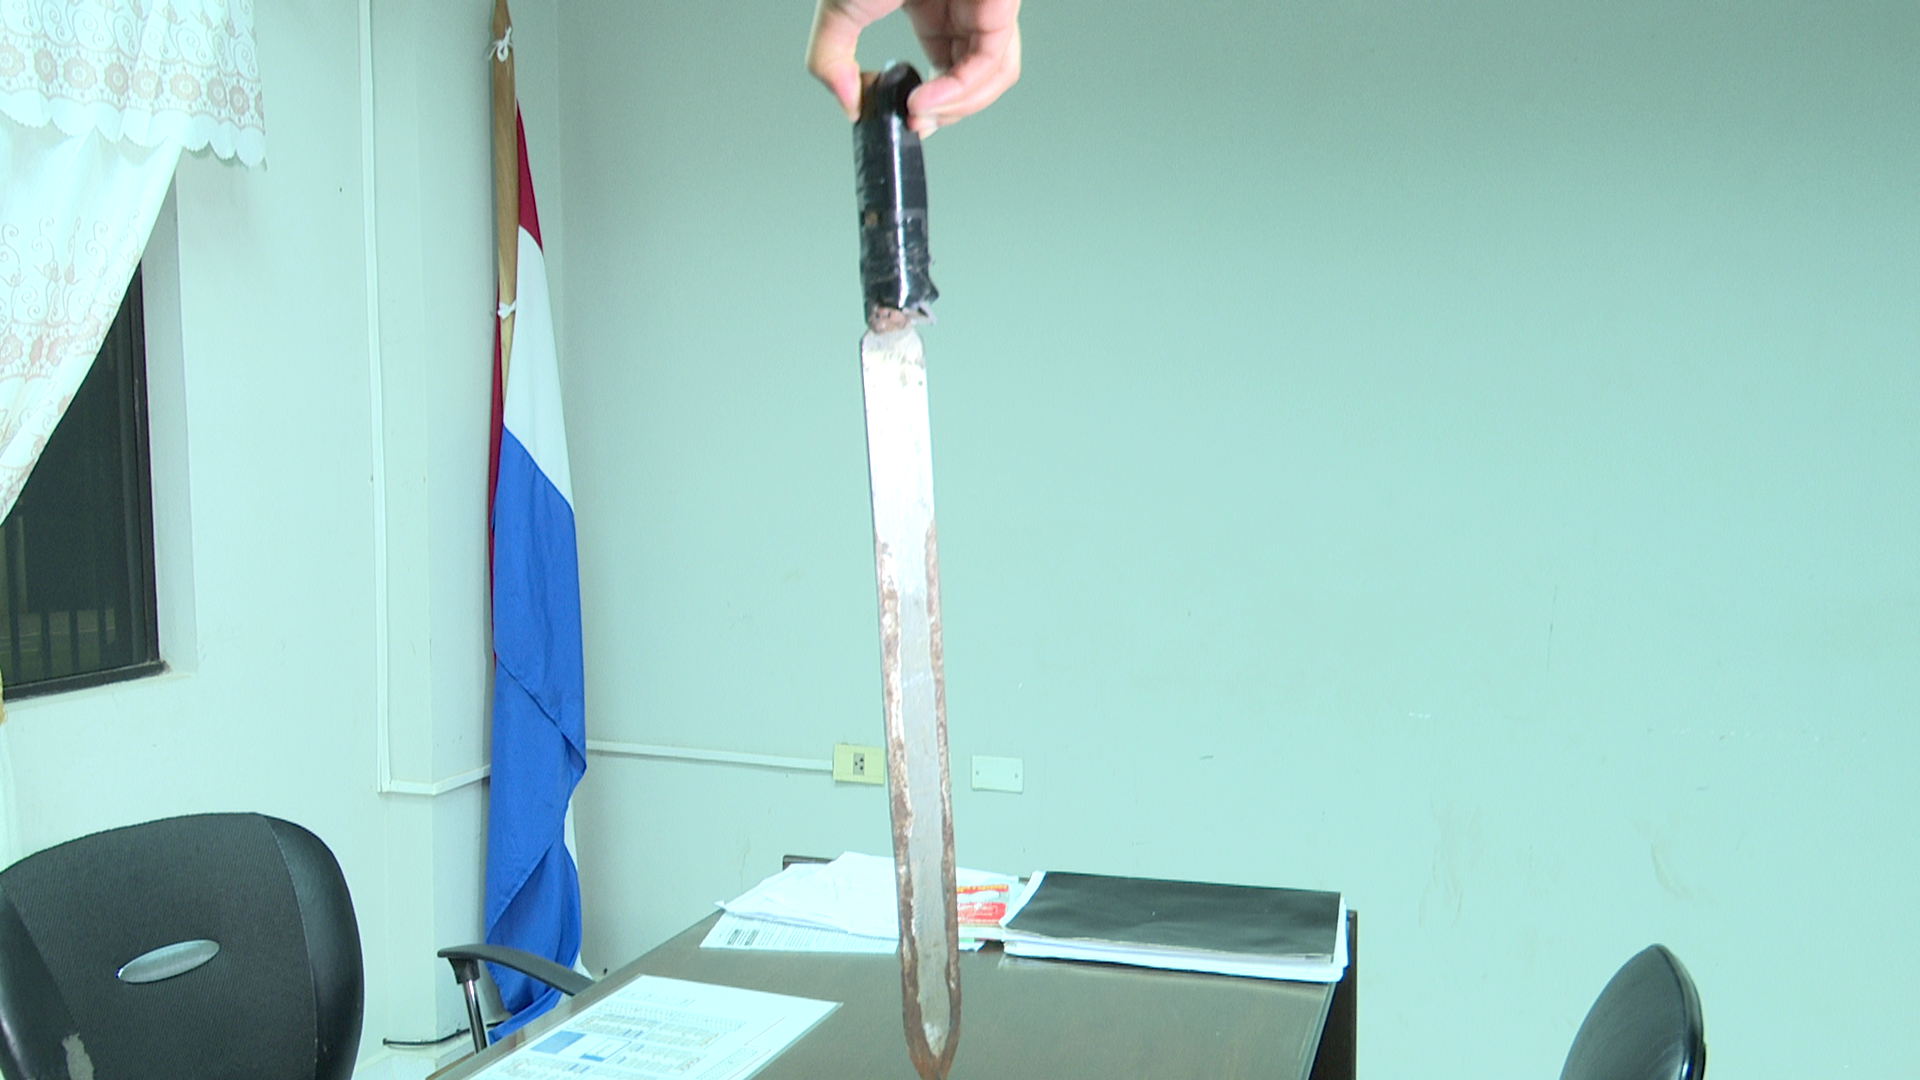 El arma blanca de fabricación casera, tipo espadín, mide unos 57 cm. Foto: Captura de pantalla / Trece.